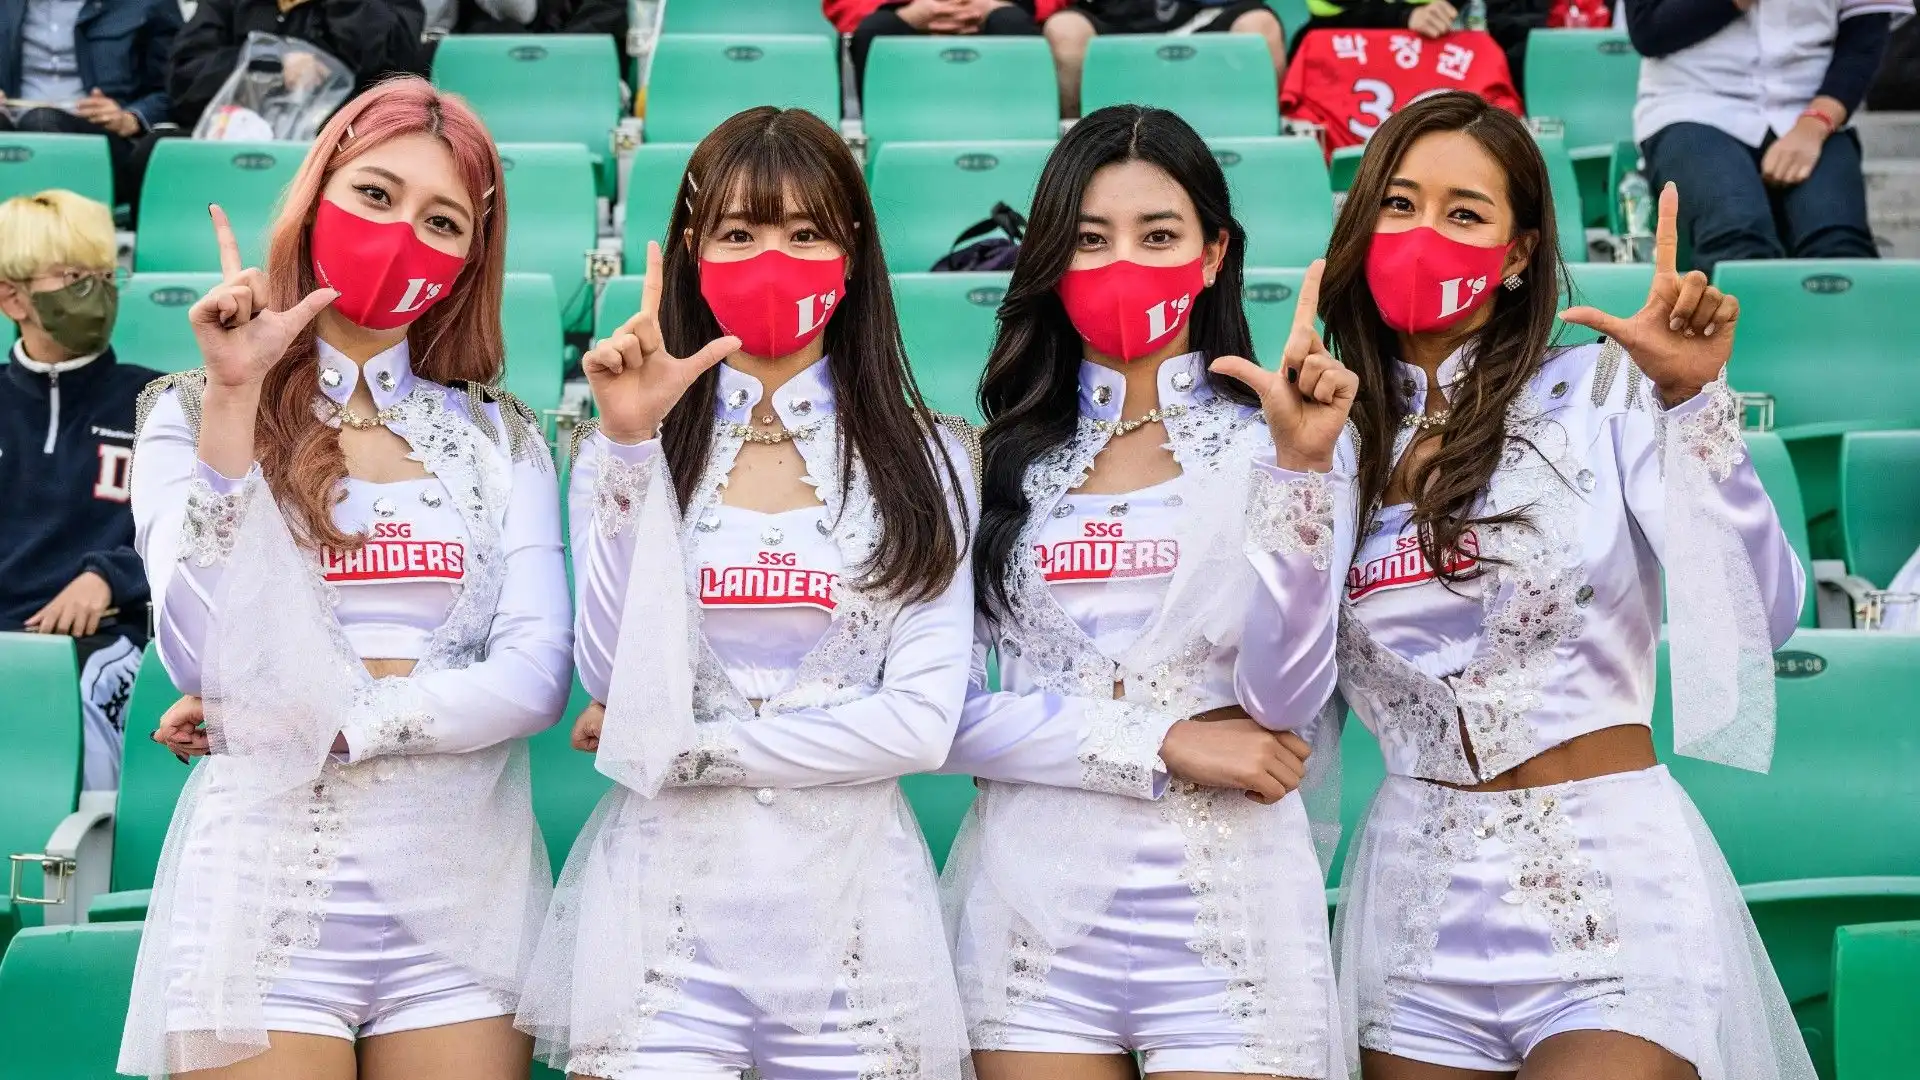 Le splendide foto delle cheerleader sudcoreane dell'SSG Landers